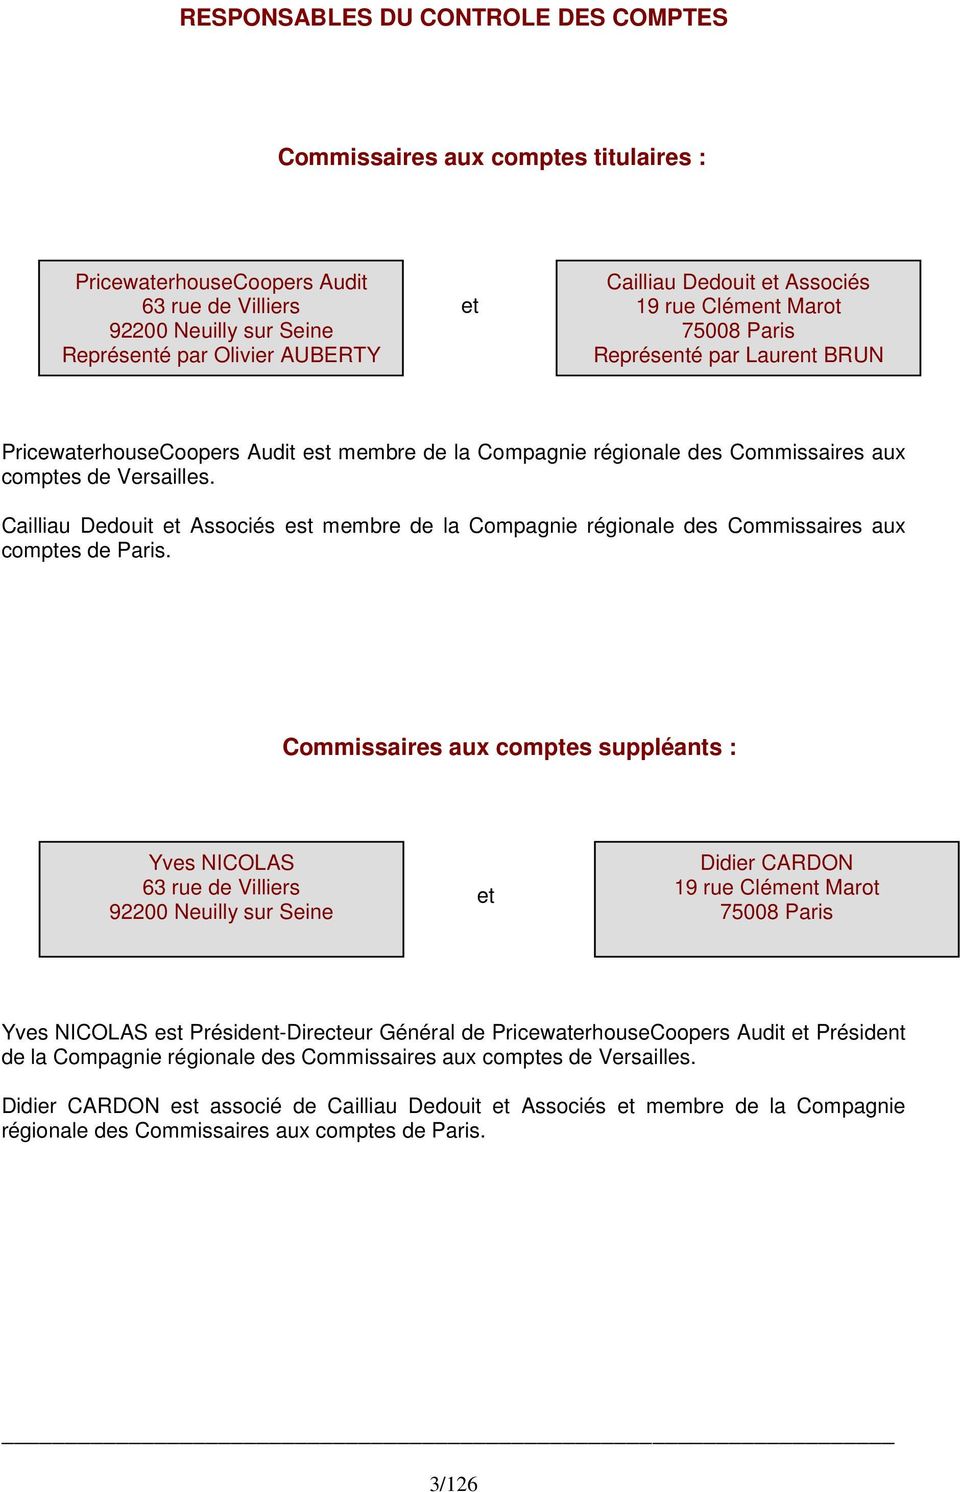 Cailliau Dedouit et Associés est membre de la Compagnie régionale des Commissaires aux comptes de Paris.